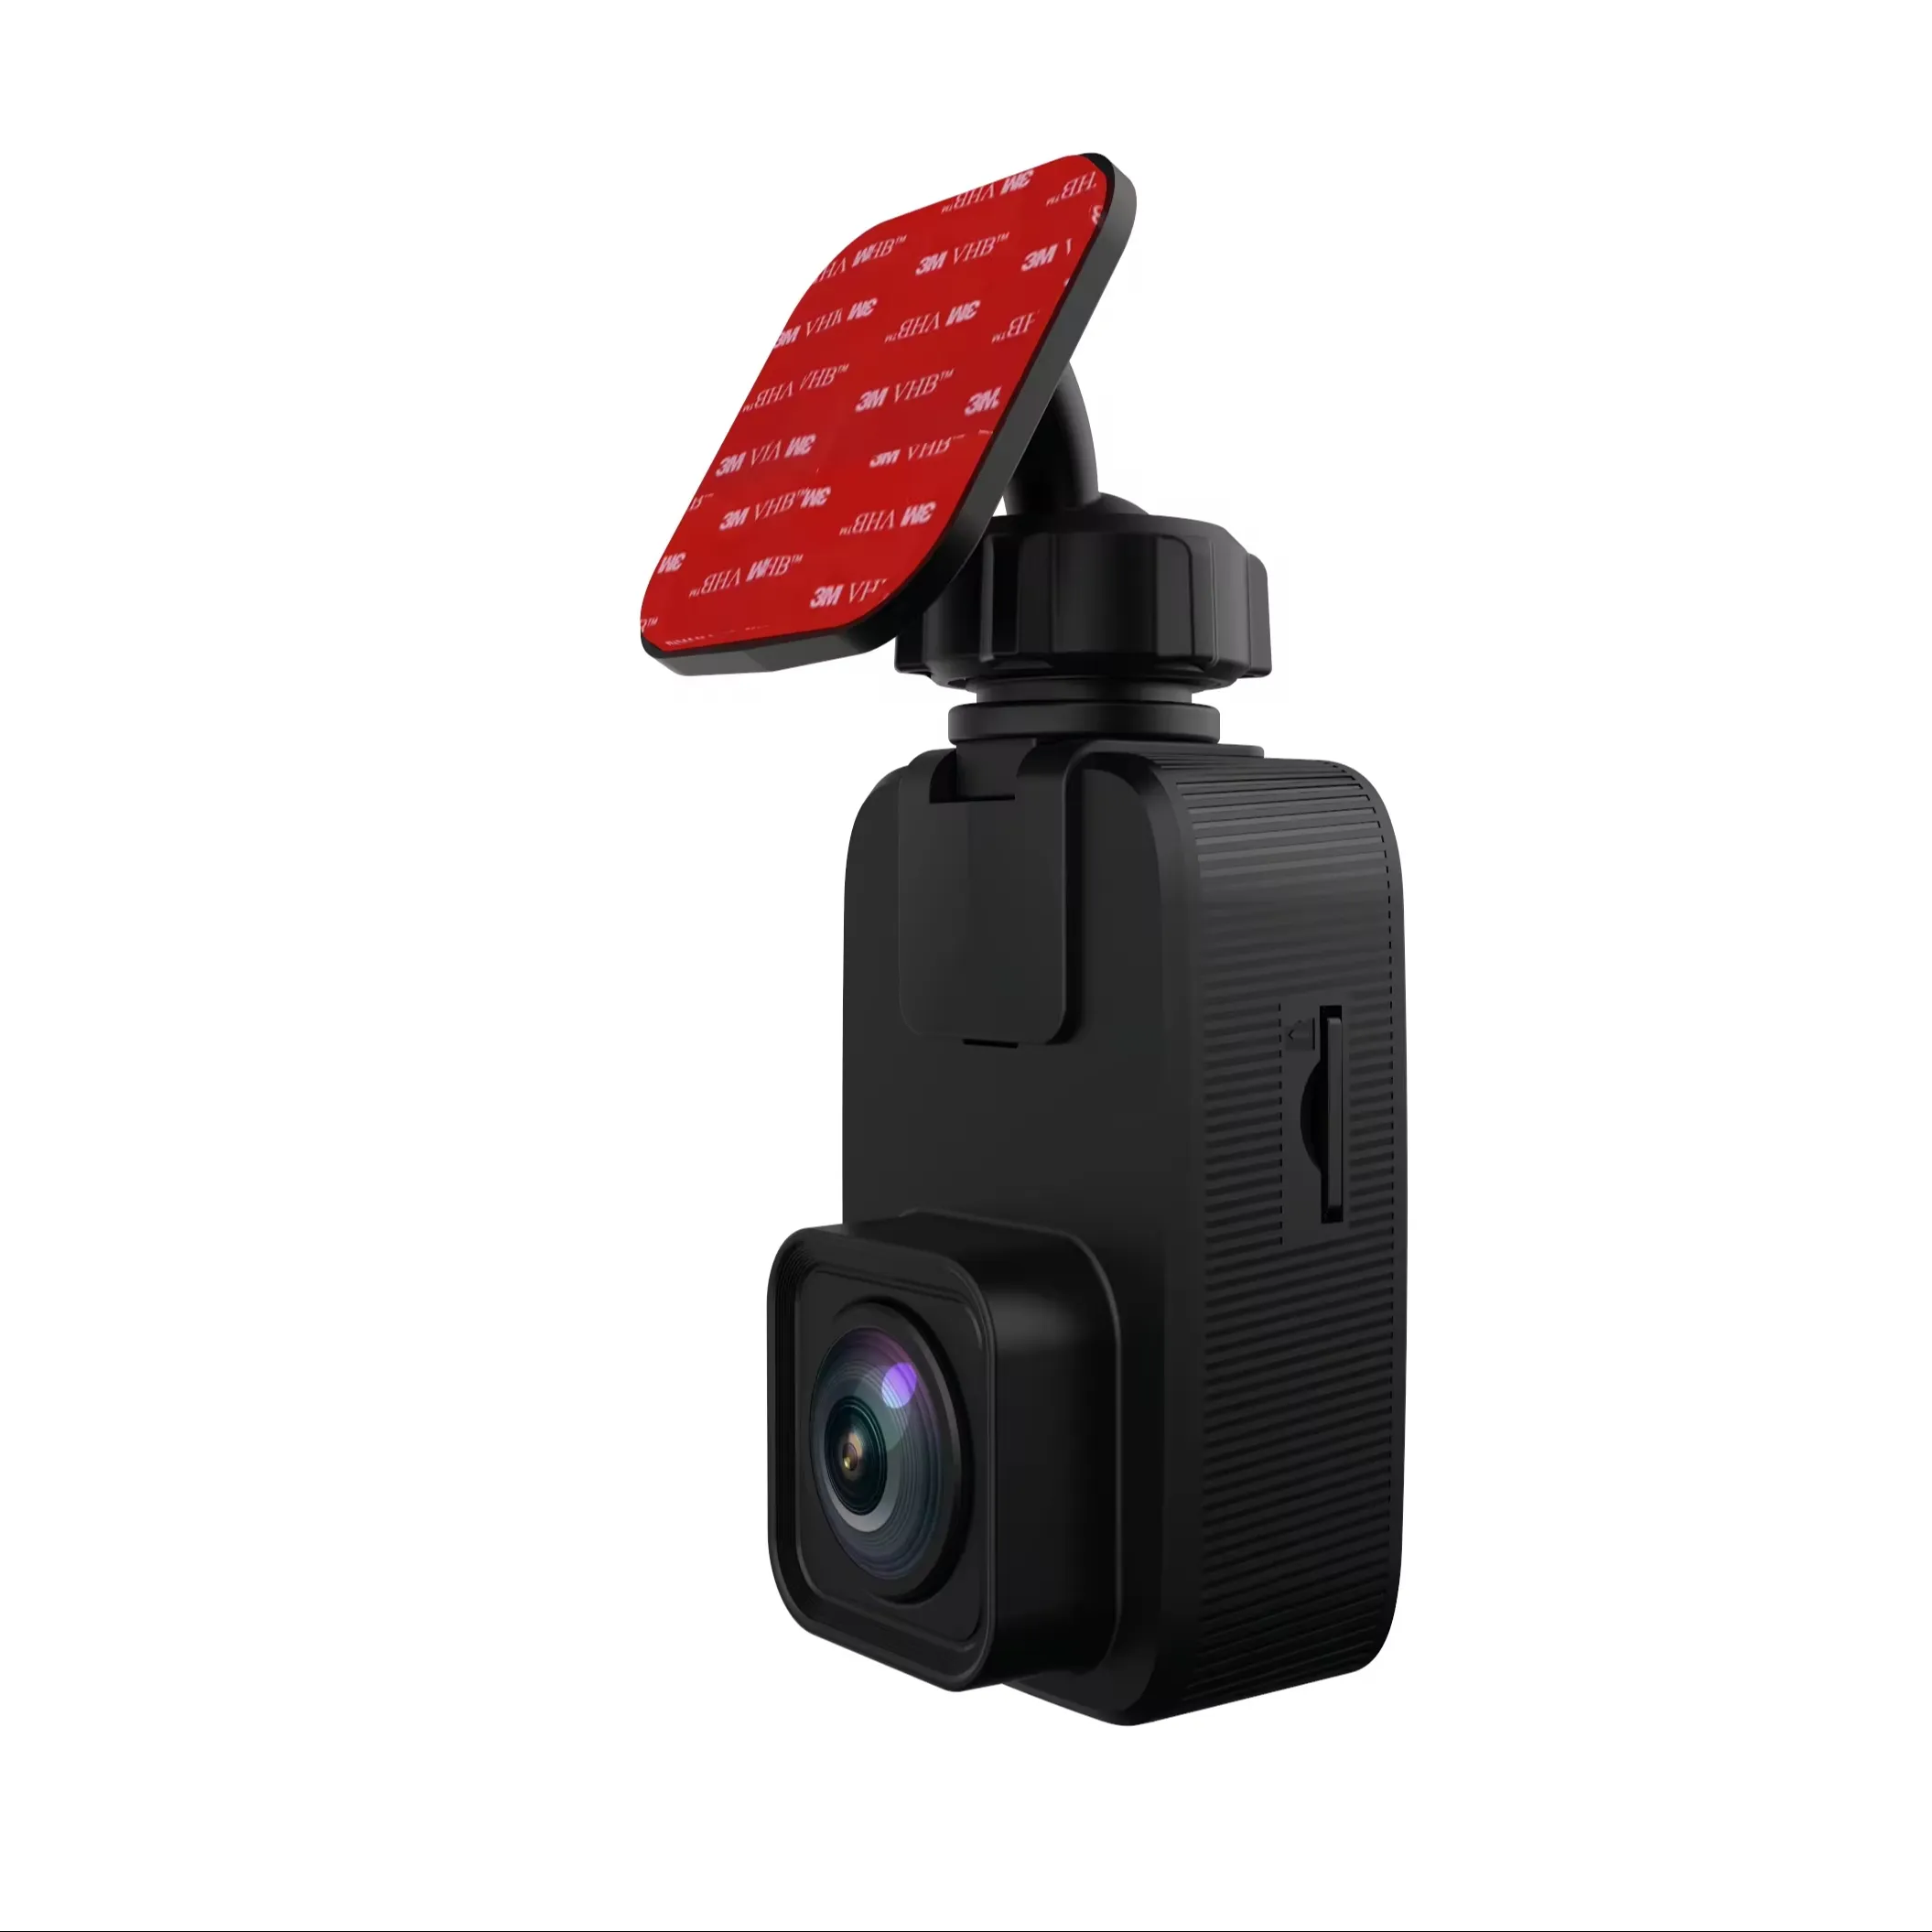 Akeyo 1080p kamera Dvr mobil Manual pengguna Dvr kotak hitam kendaraan dengan kartu SD